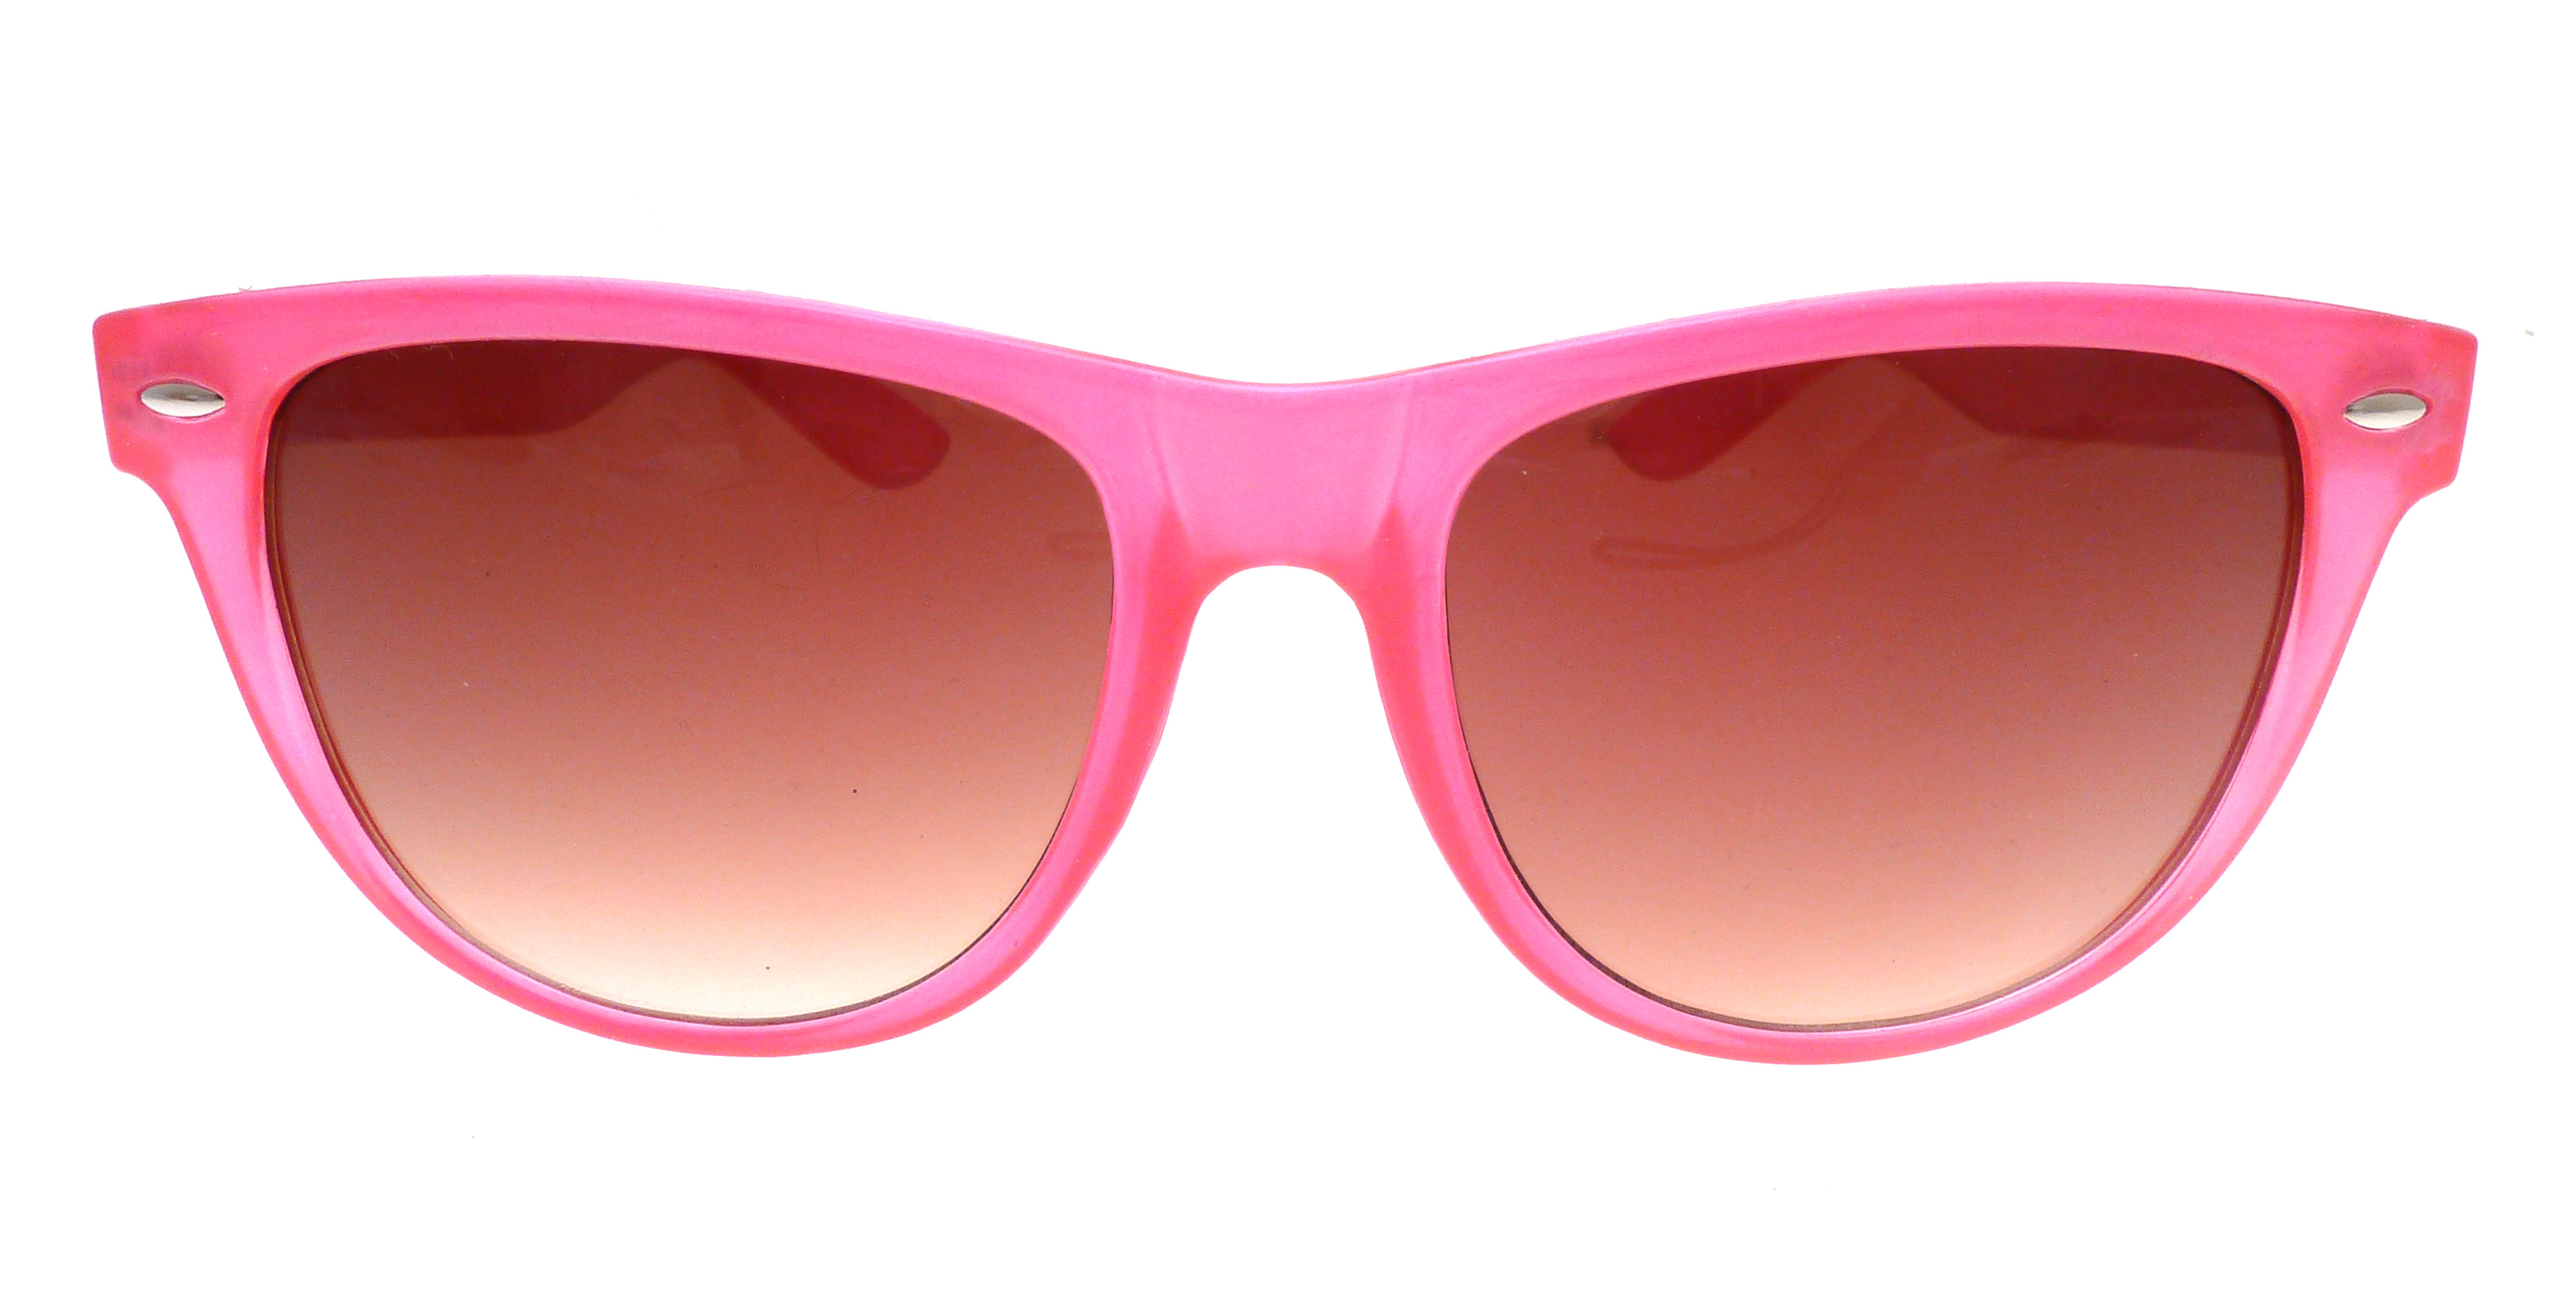 Fashion Sunglasses Clip Art � Clipart Free Download